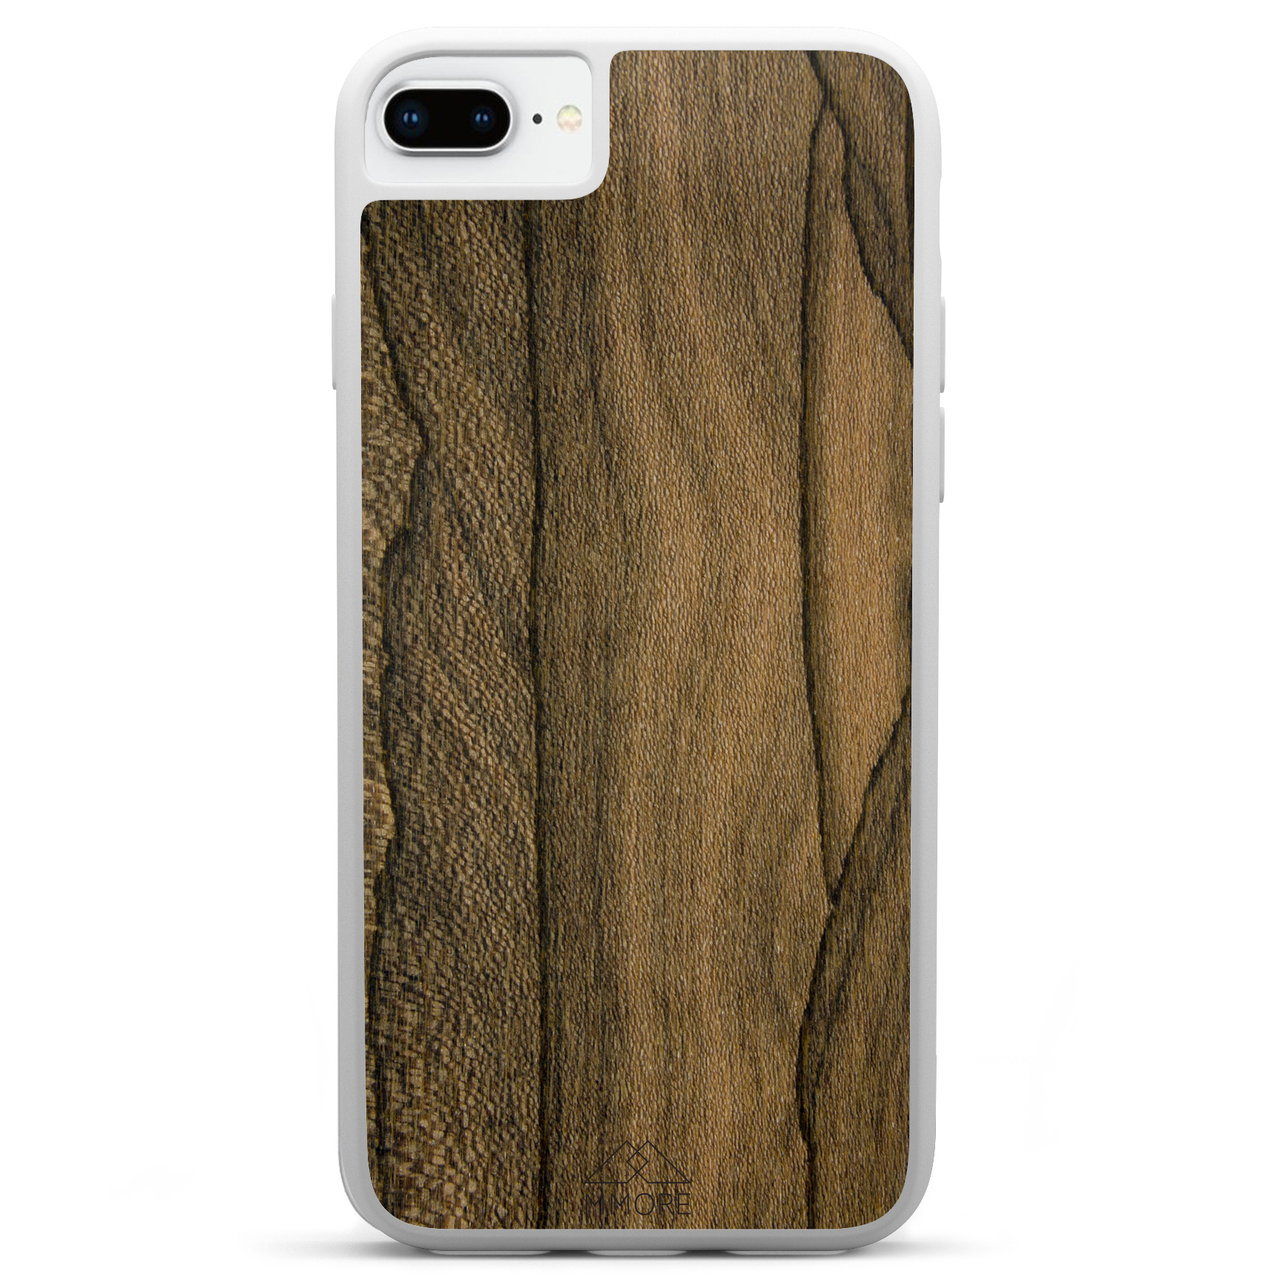 Funda para iPhone 7 Plus Ziricote Wood blanca para teléfono